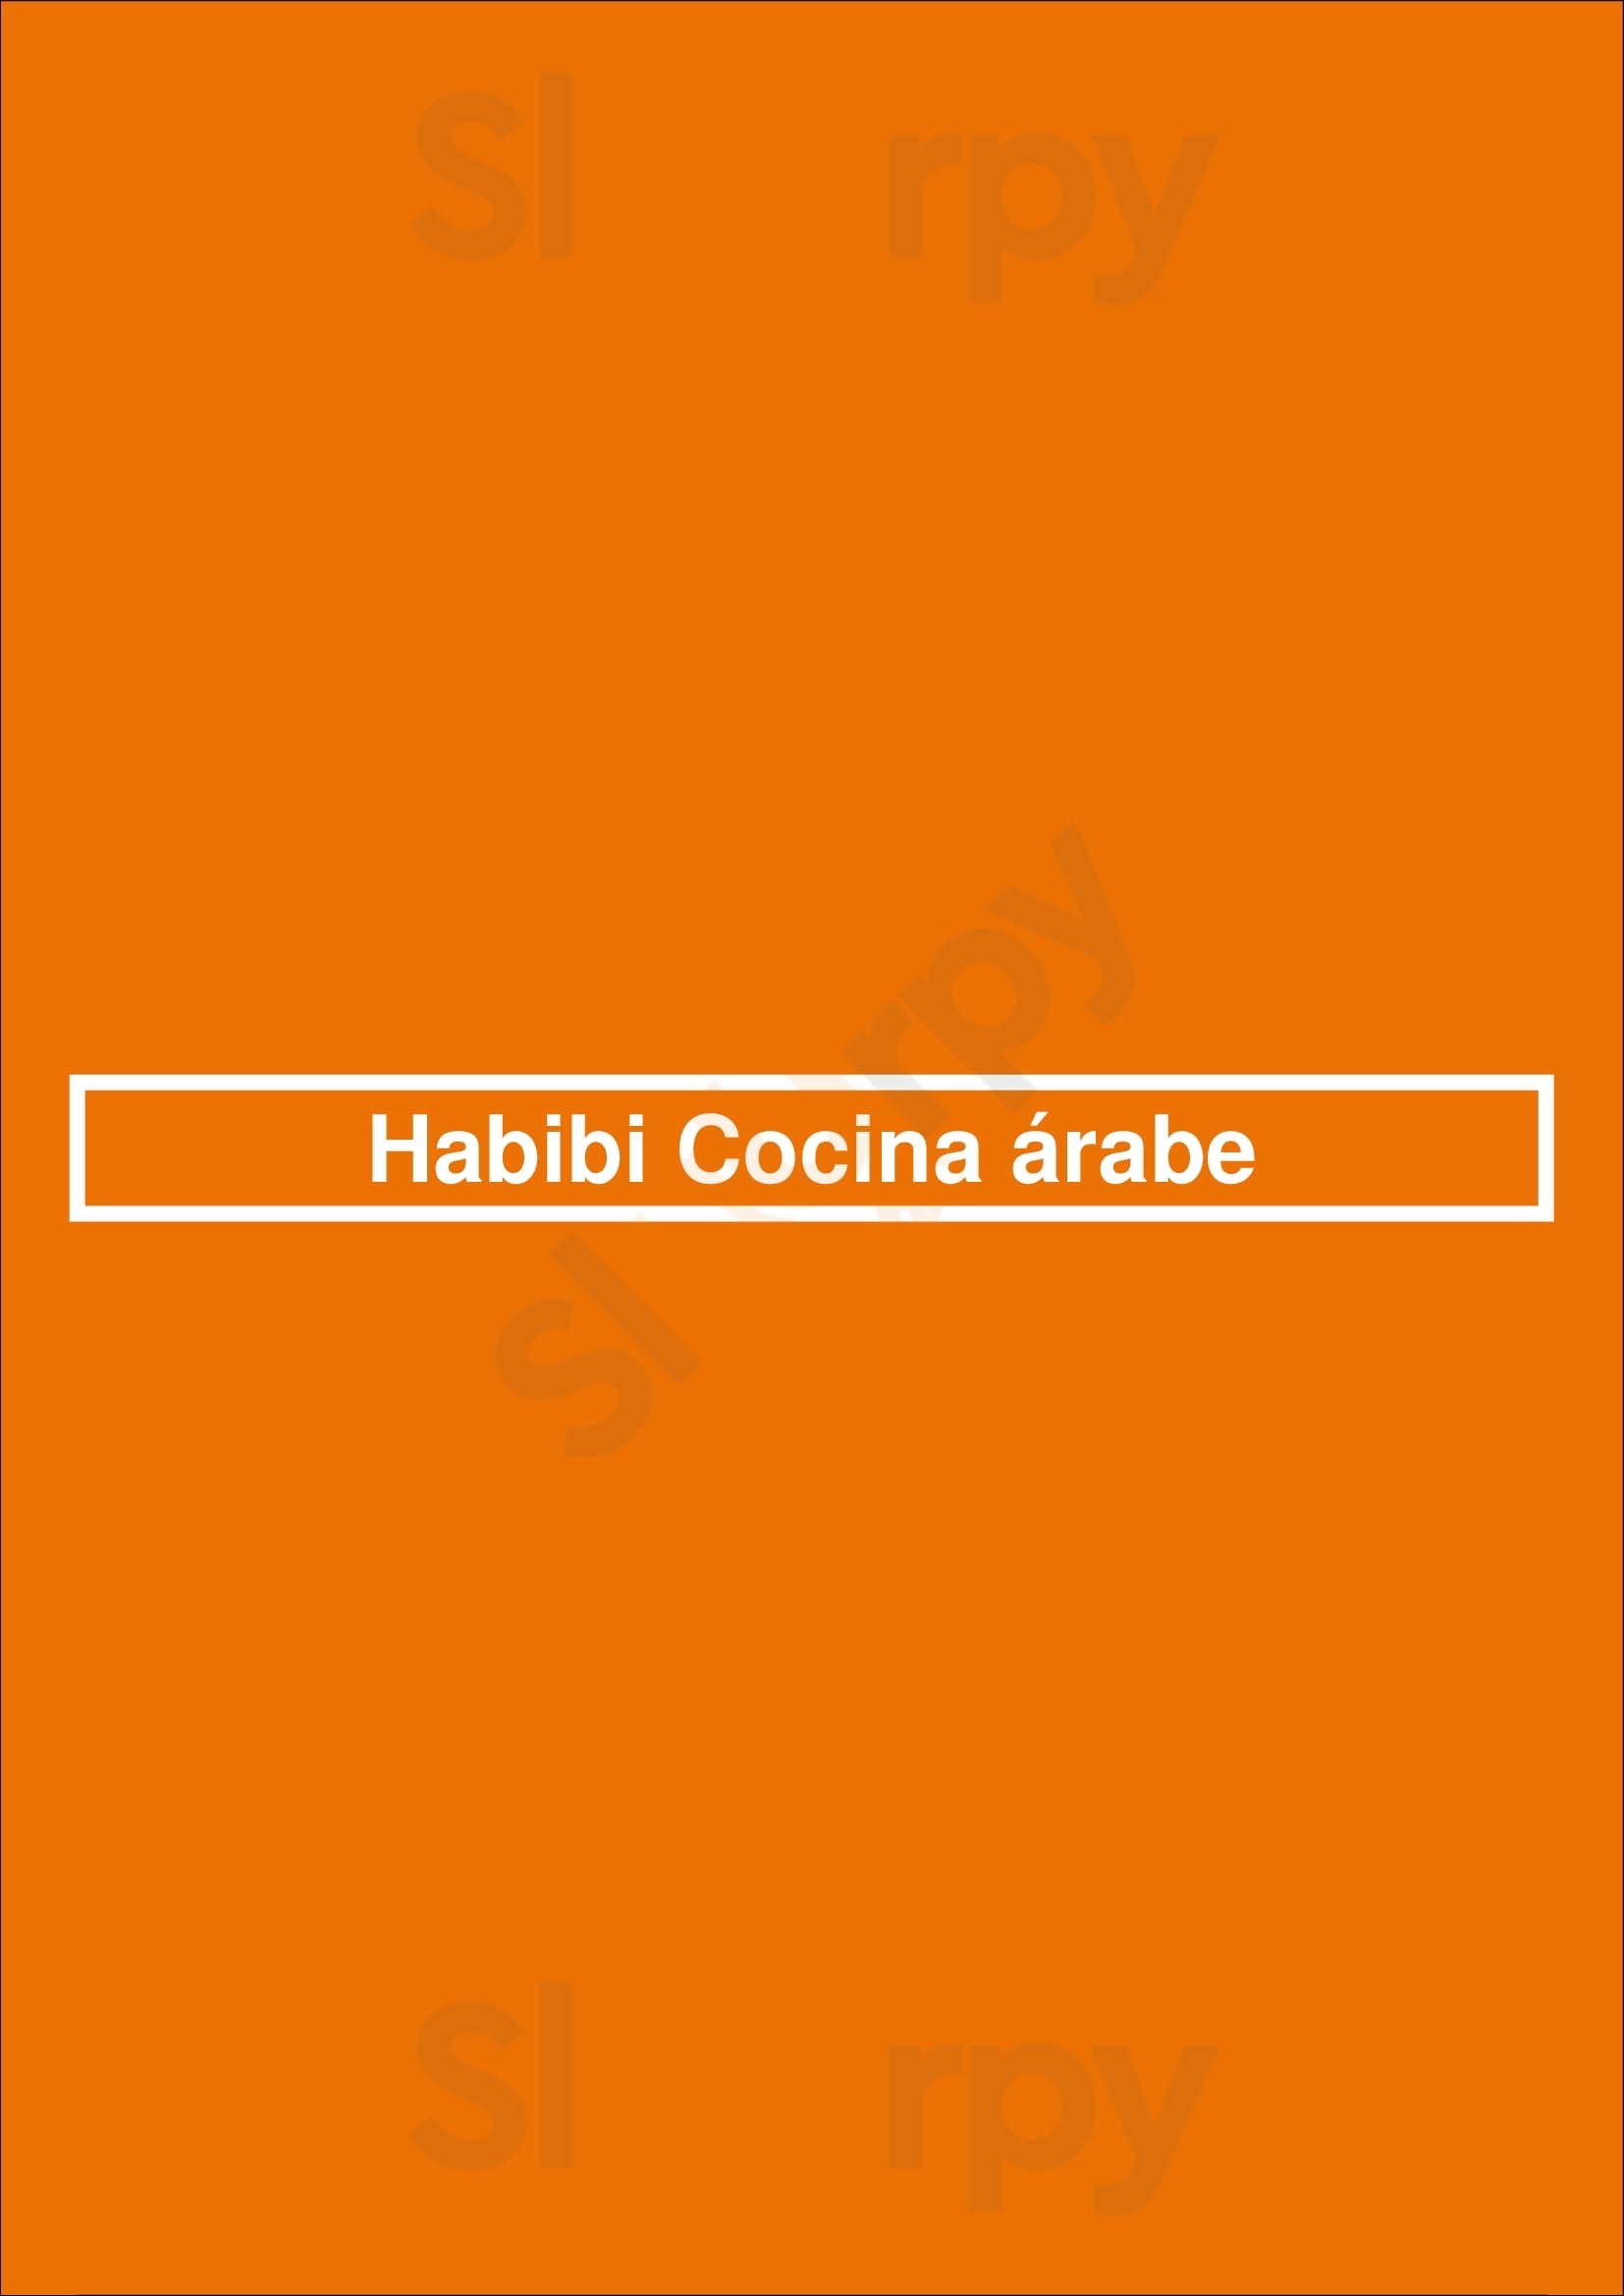 Habibi Cocina árabe Buenos Aires Menu - 1